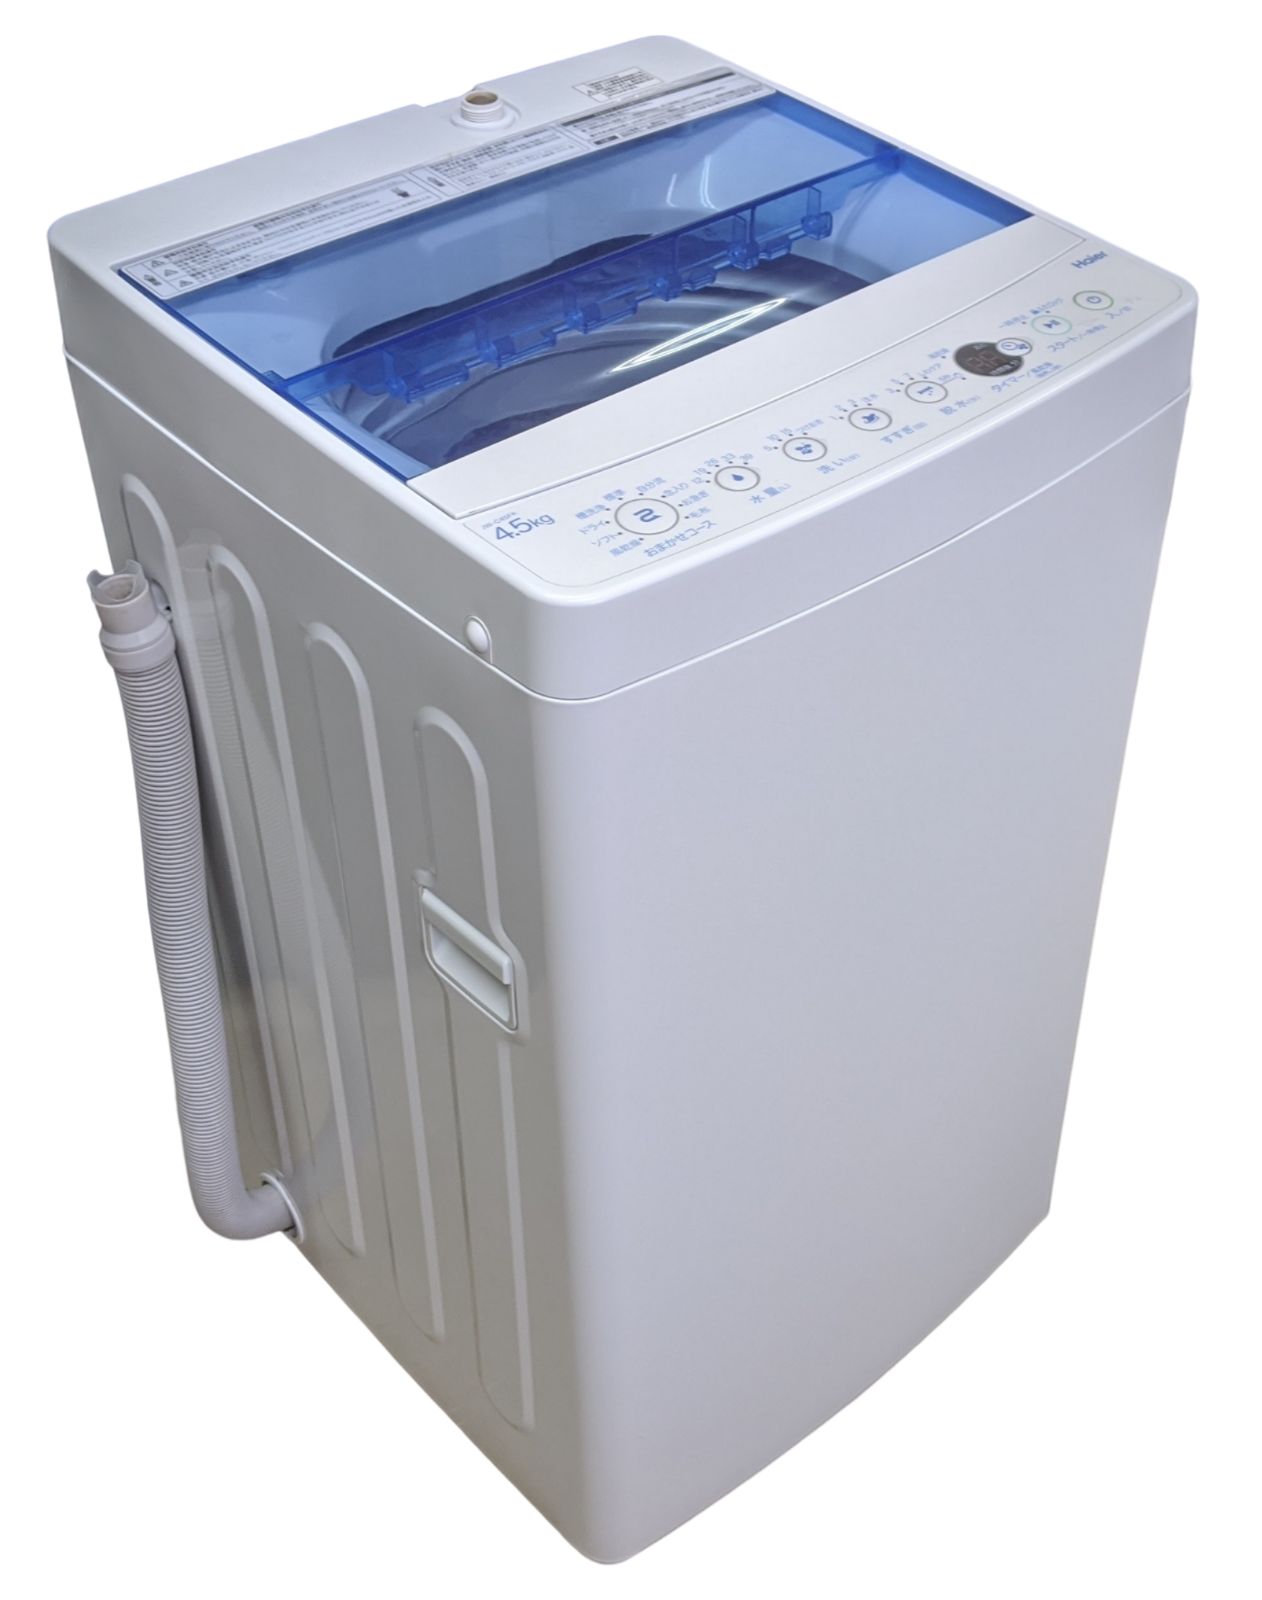 ⭐送料無料！2019年製の洗濯機がこの価格⭐お得です！⭐ハイアール洗濯 